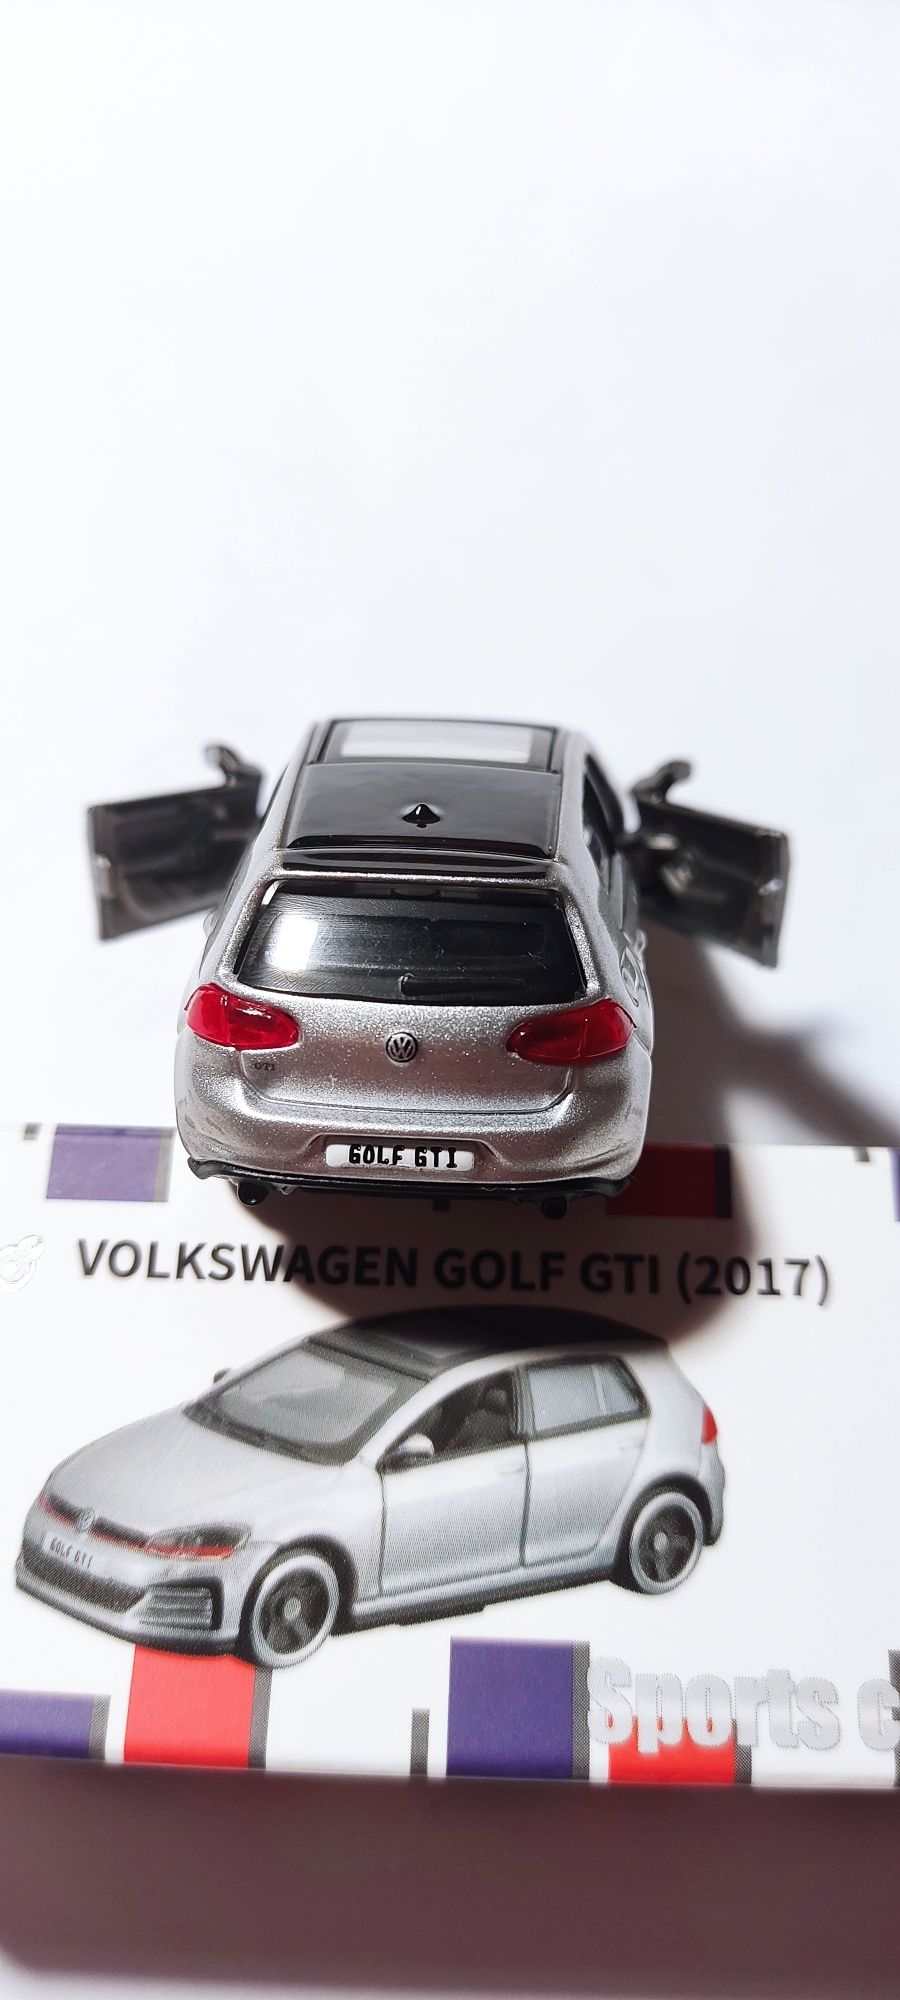 Коллекционная модель Volkswagen golf GTI bburago,Фольксваген гольф гти